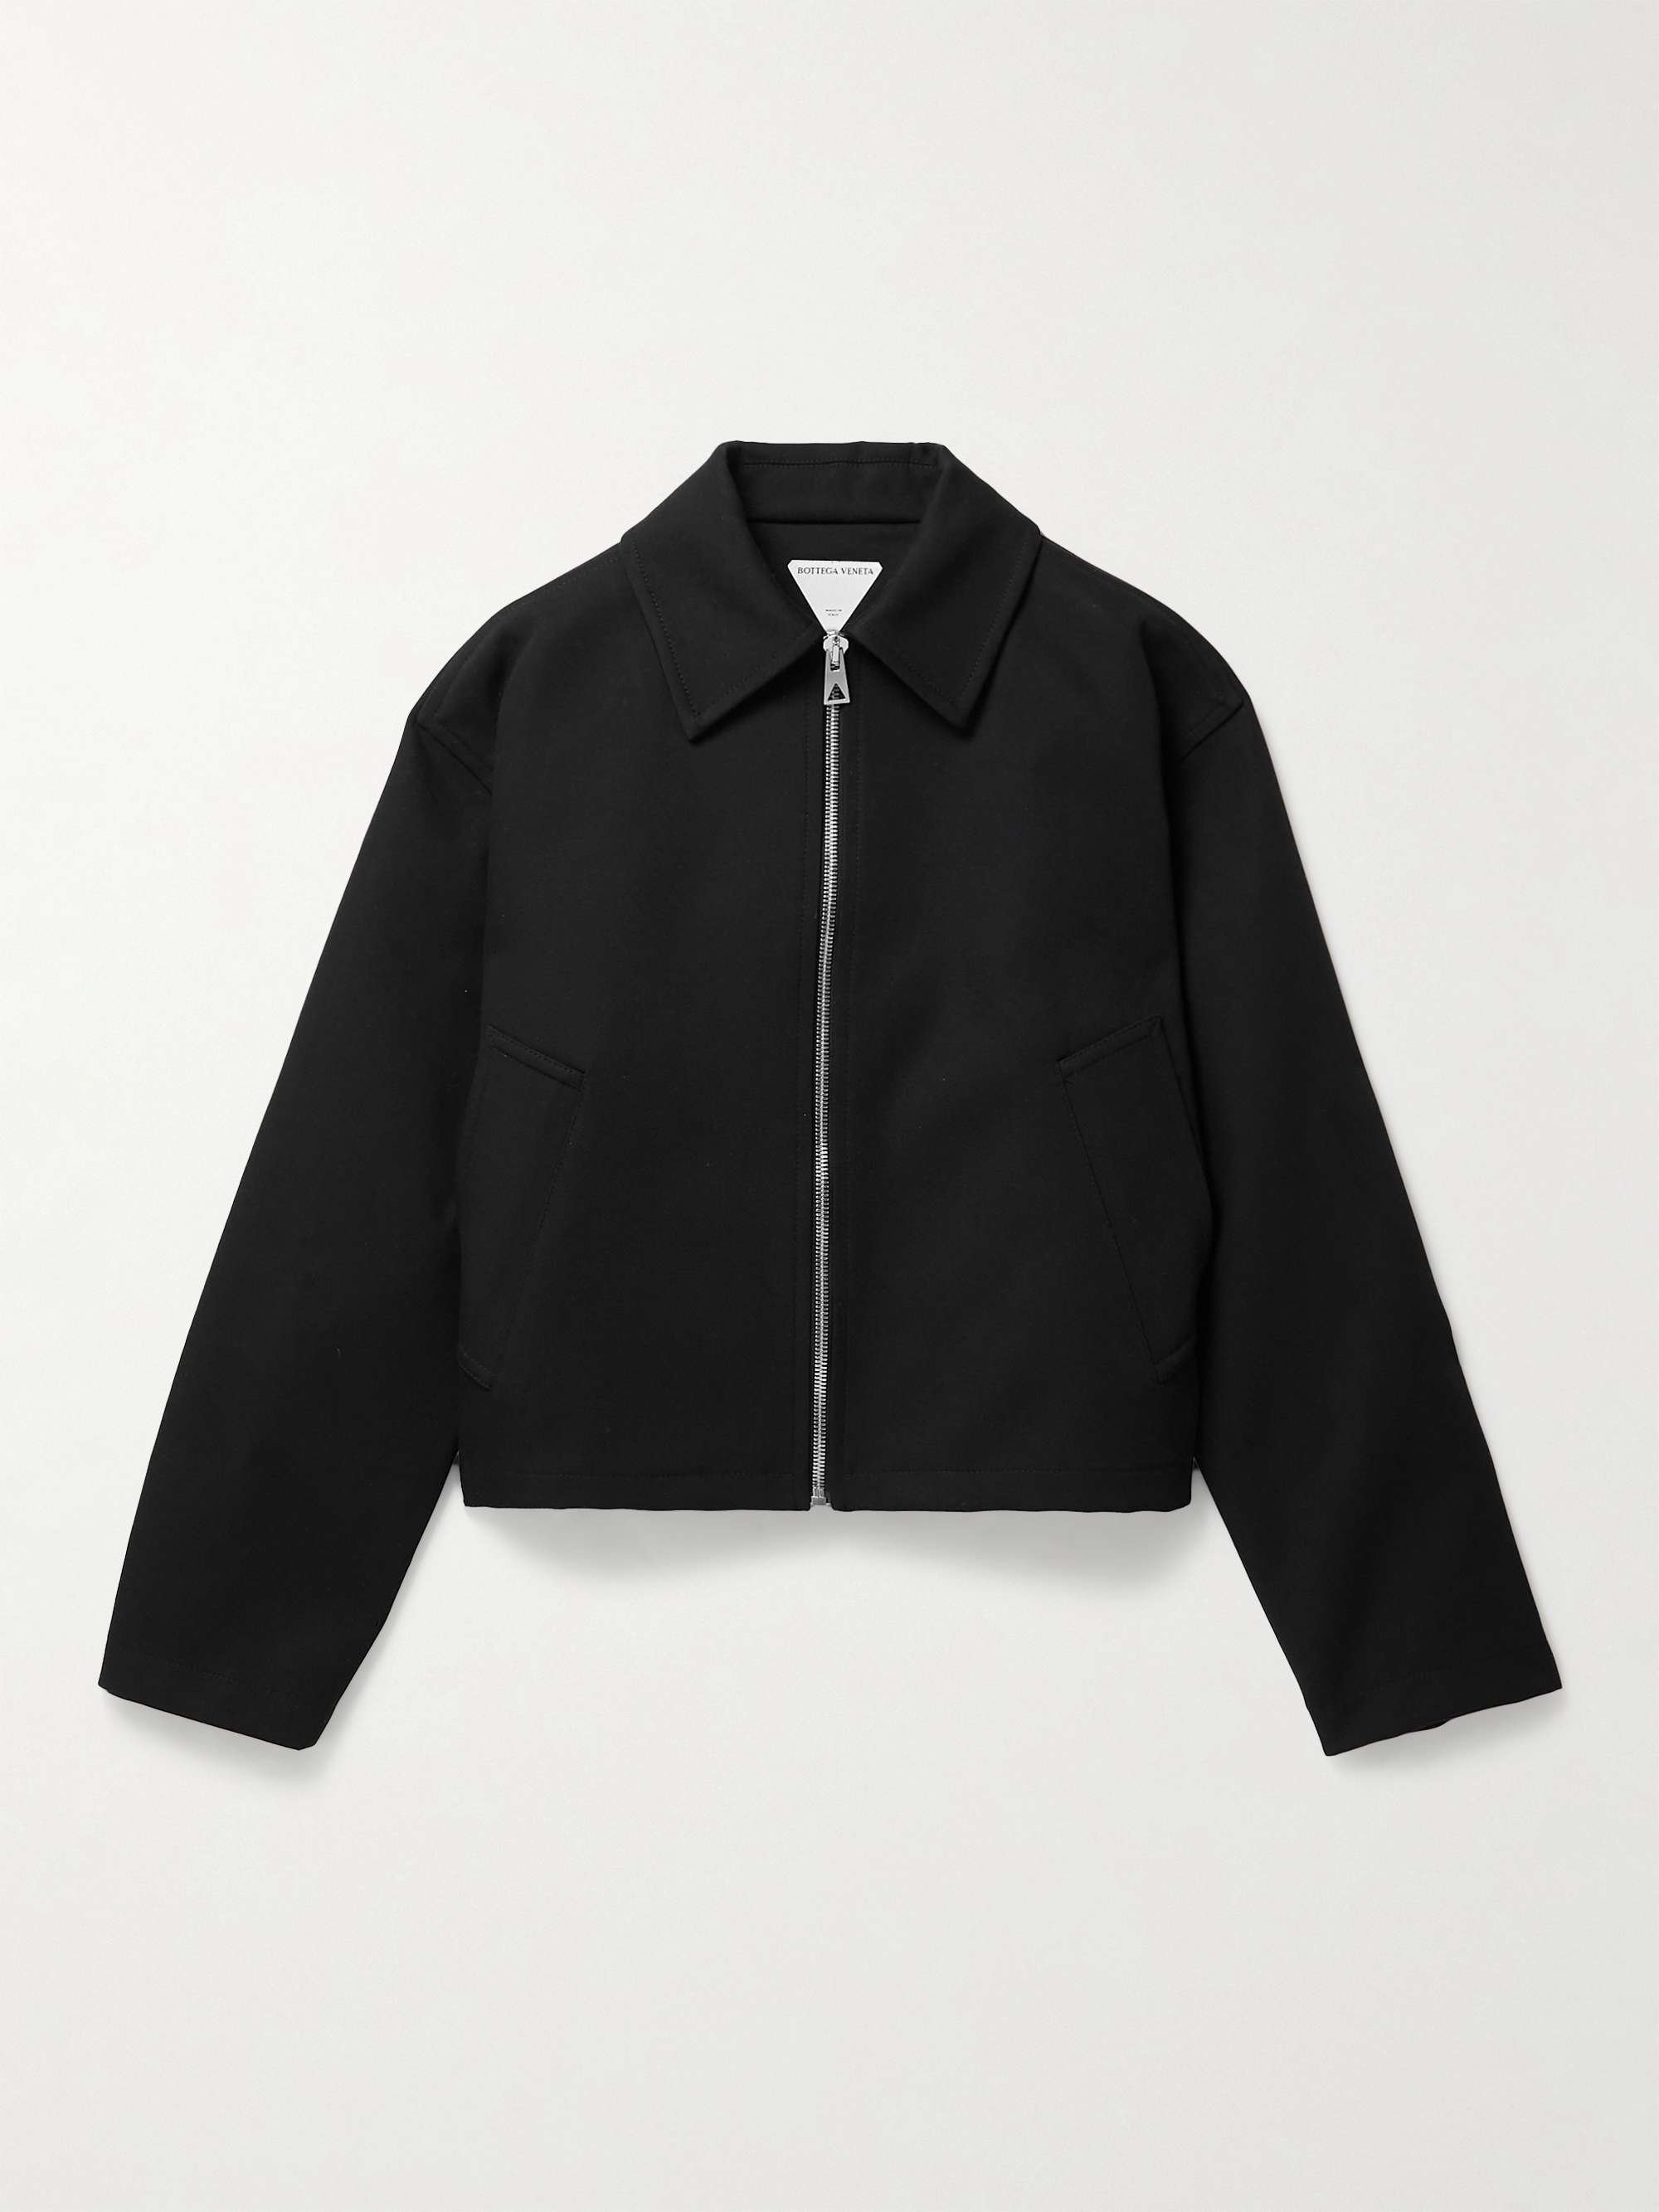 BOTTEGA VENETA Bonded Cotton Blouson Jacket for Men | MR PORTER